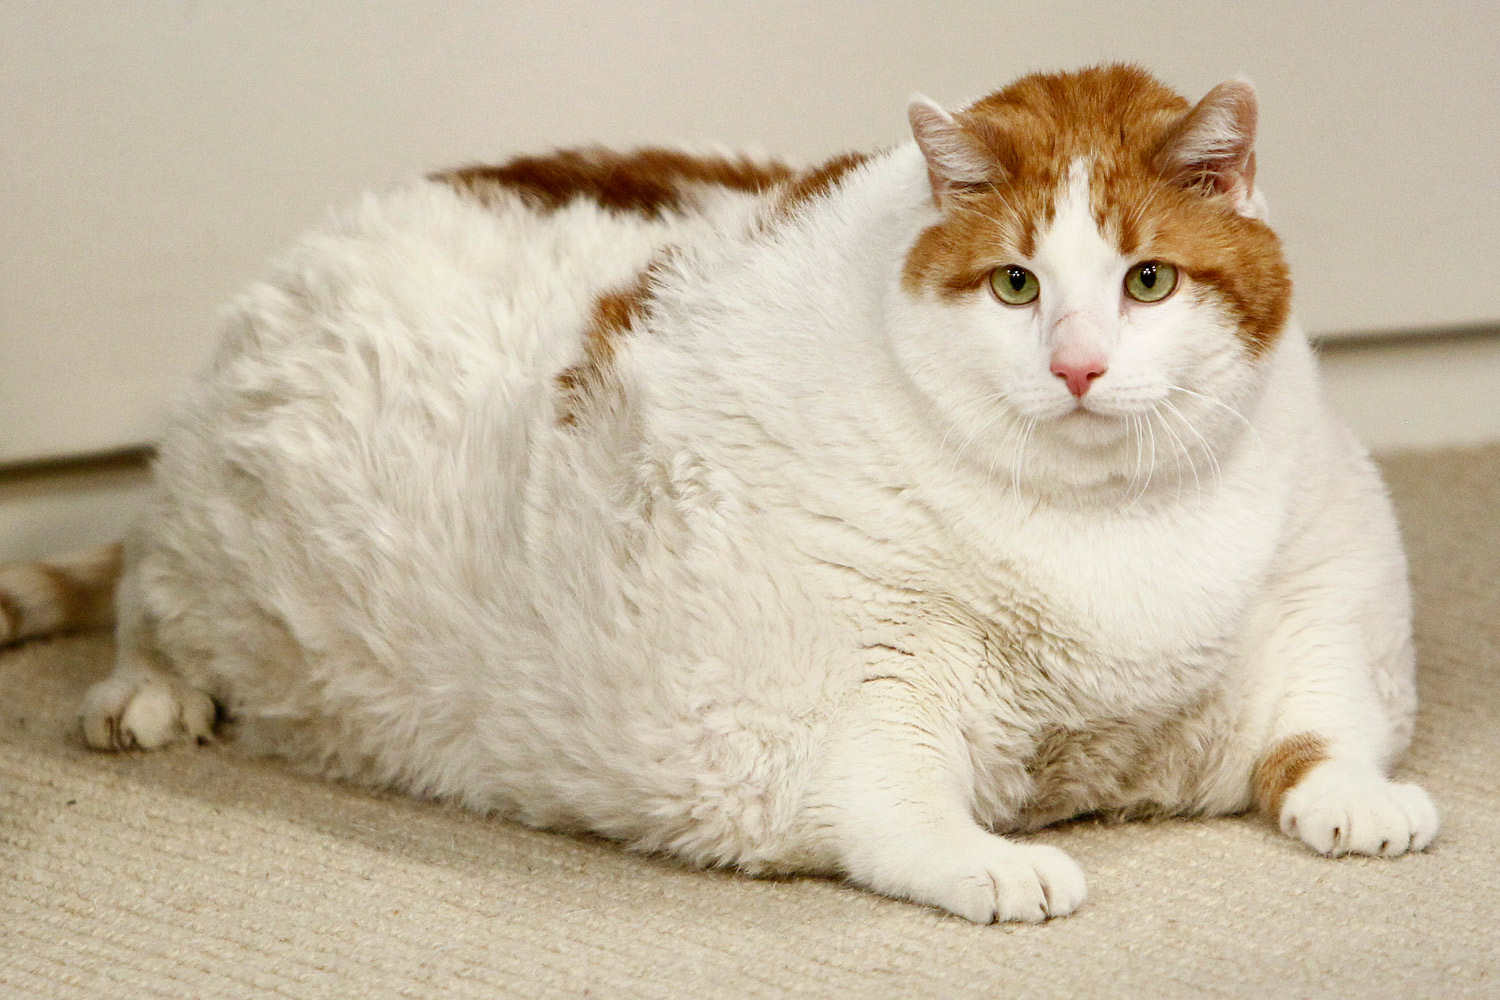 chubby cat